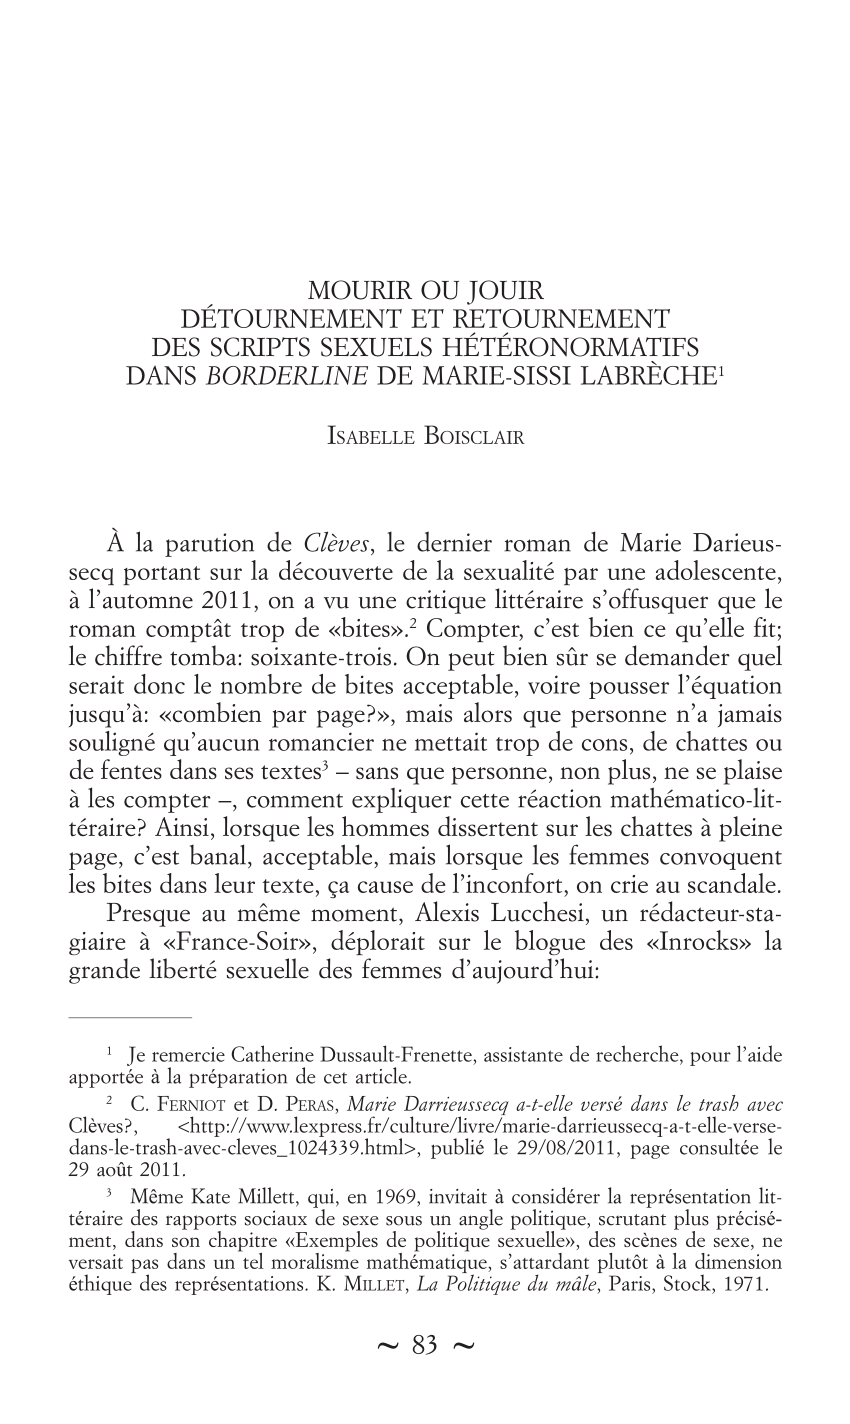 PDF) Mourir ou jouir détournement et retournement des scripts sexuels hétéronormatifs dans Bordeline de Marie-Sissi Labrèche photo